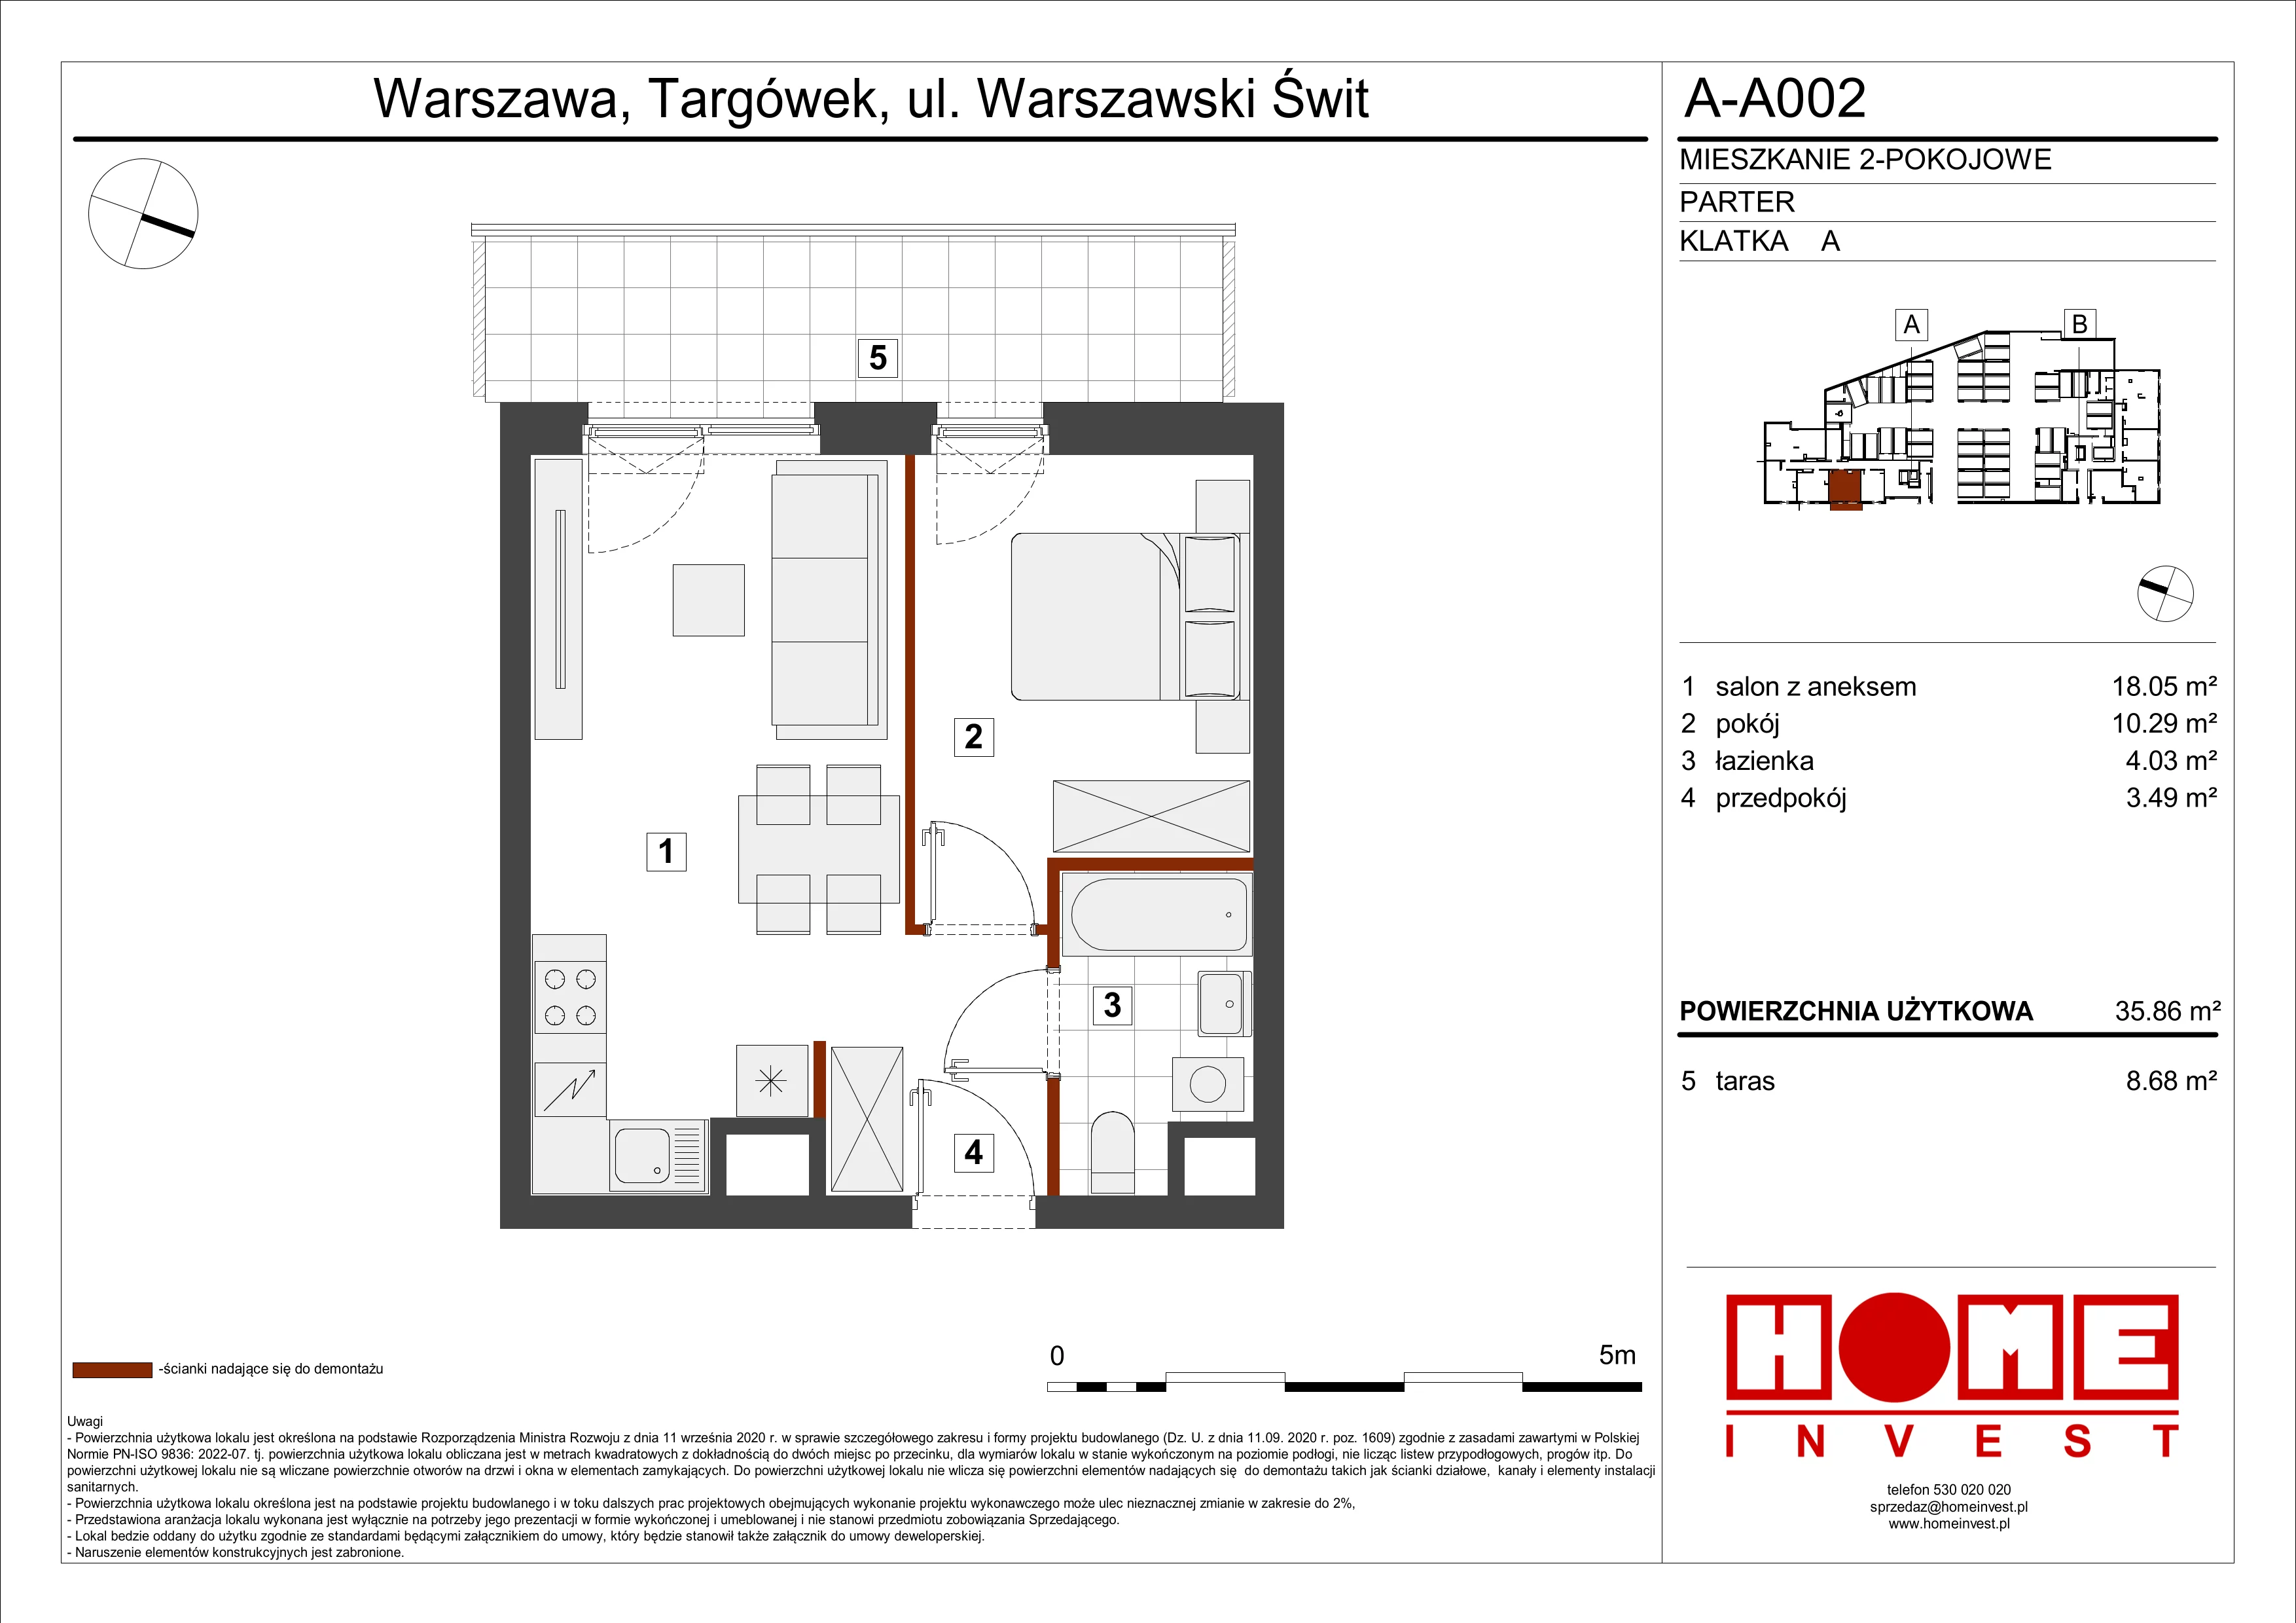 Mieszkanie 35,86 m², parter, oferta nr A-A002, Warszawski Świt, Warszawa, Targówek, Bródno, ul. Warszawski Świt 5